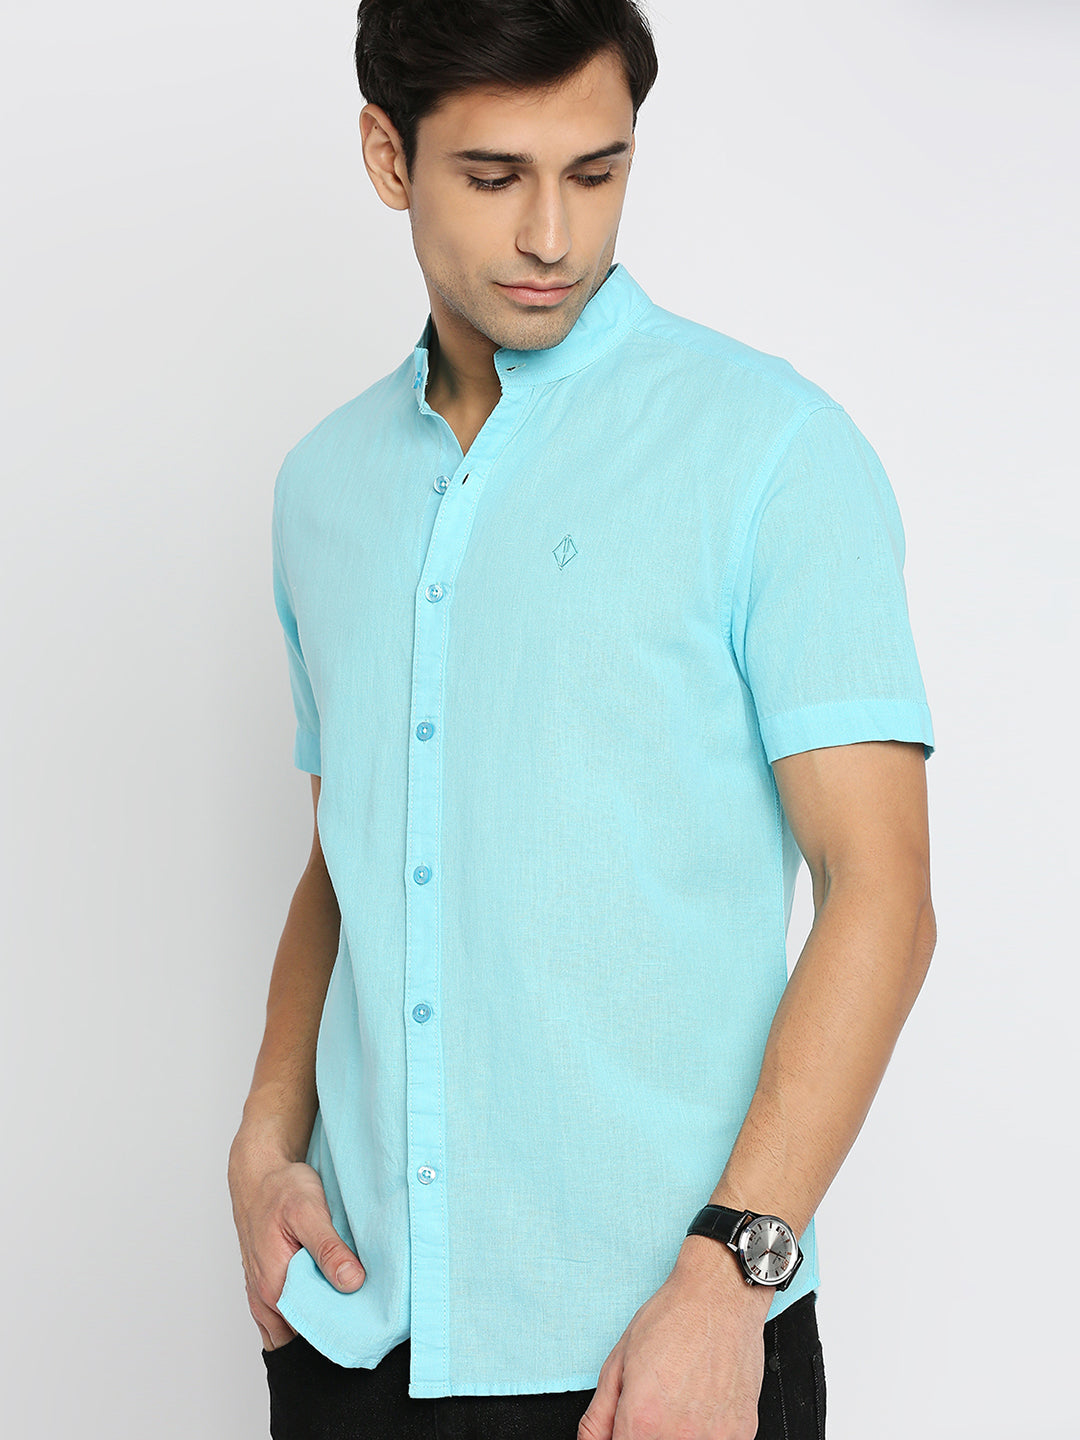 Mandarin Linen Cotton Light Blue Shirt